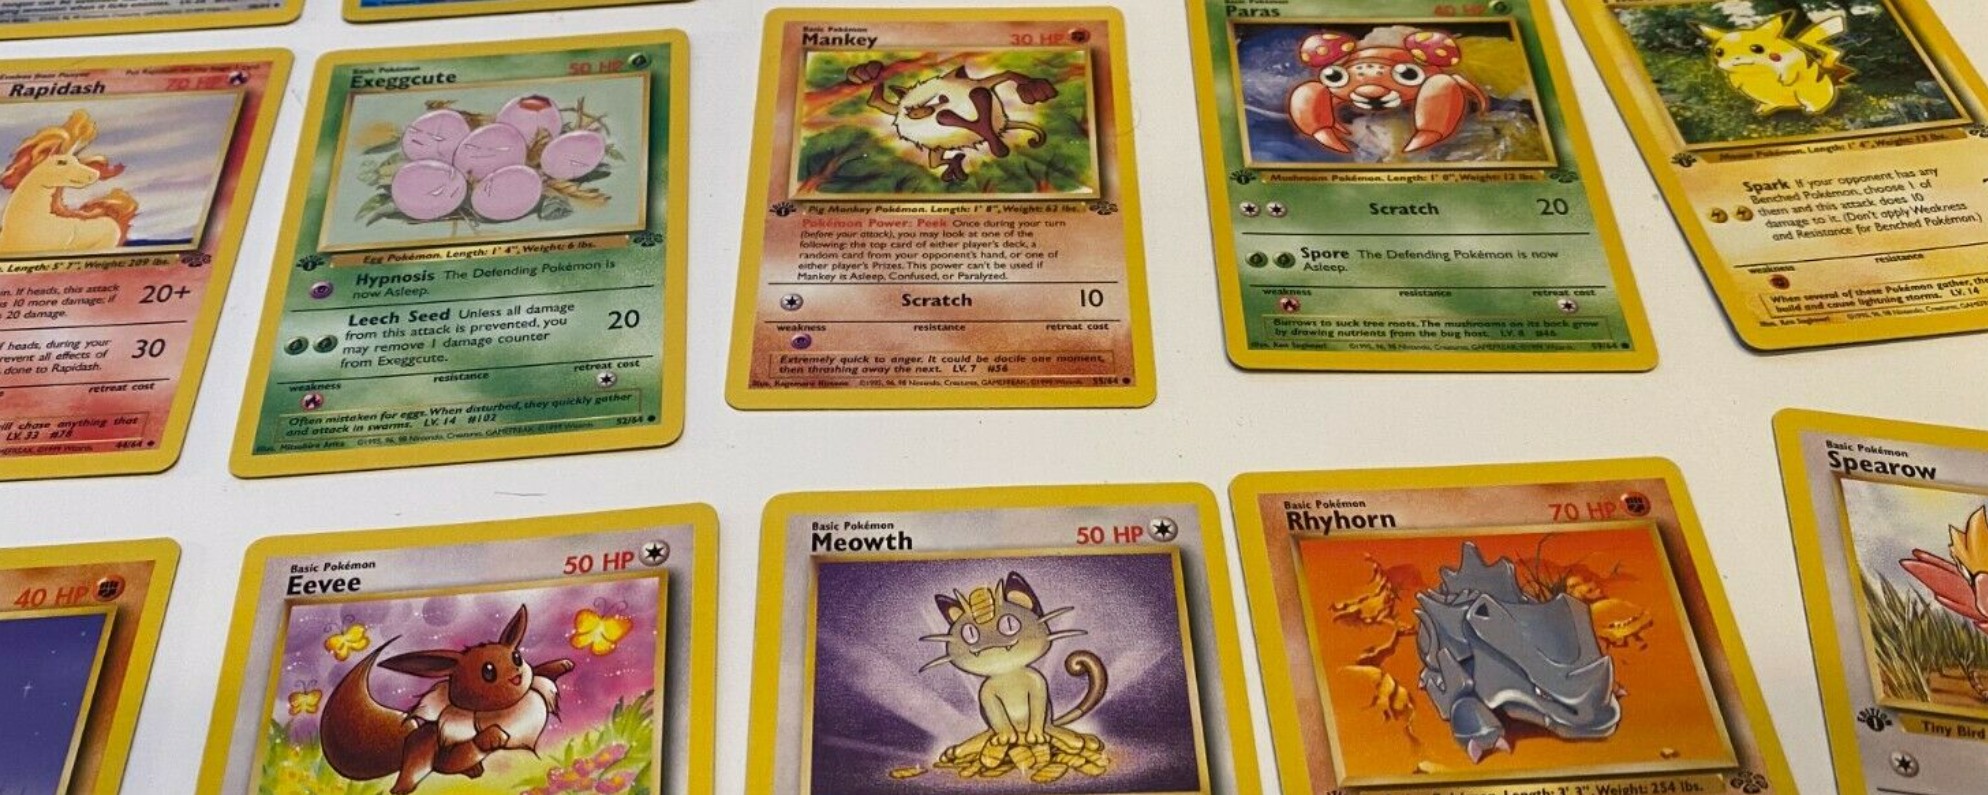 steekpenningen Spuug uit Historicus Dat Pokémonkaarten 'opnieuw populair' zijn is een grof understatement